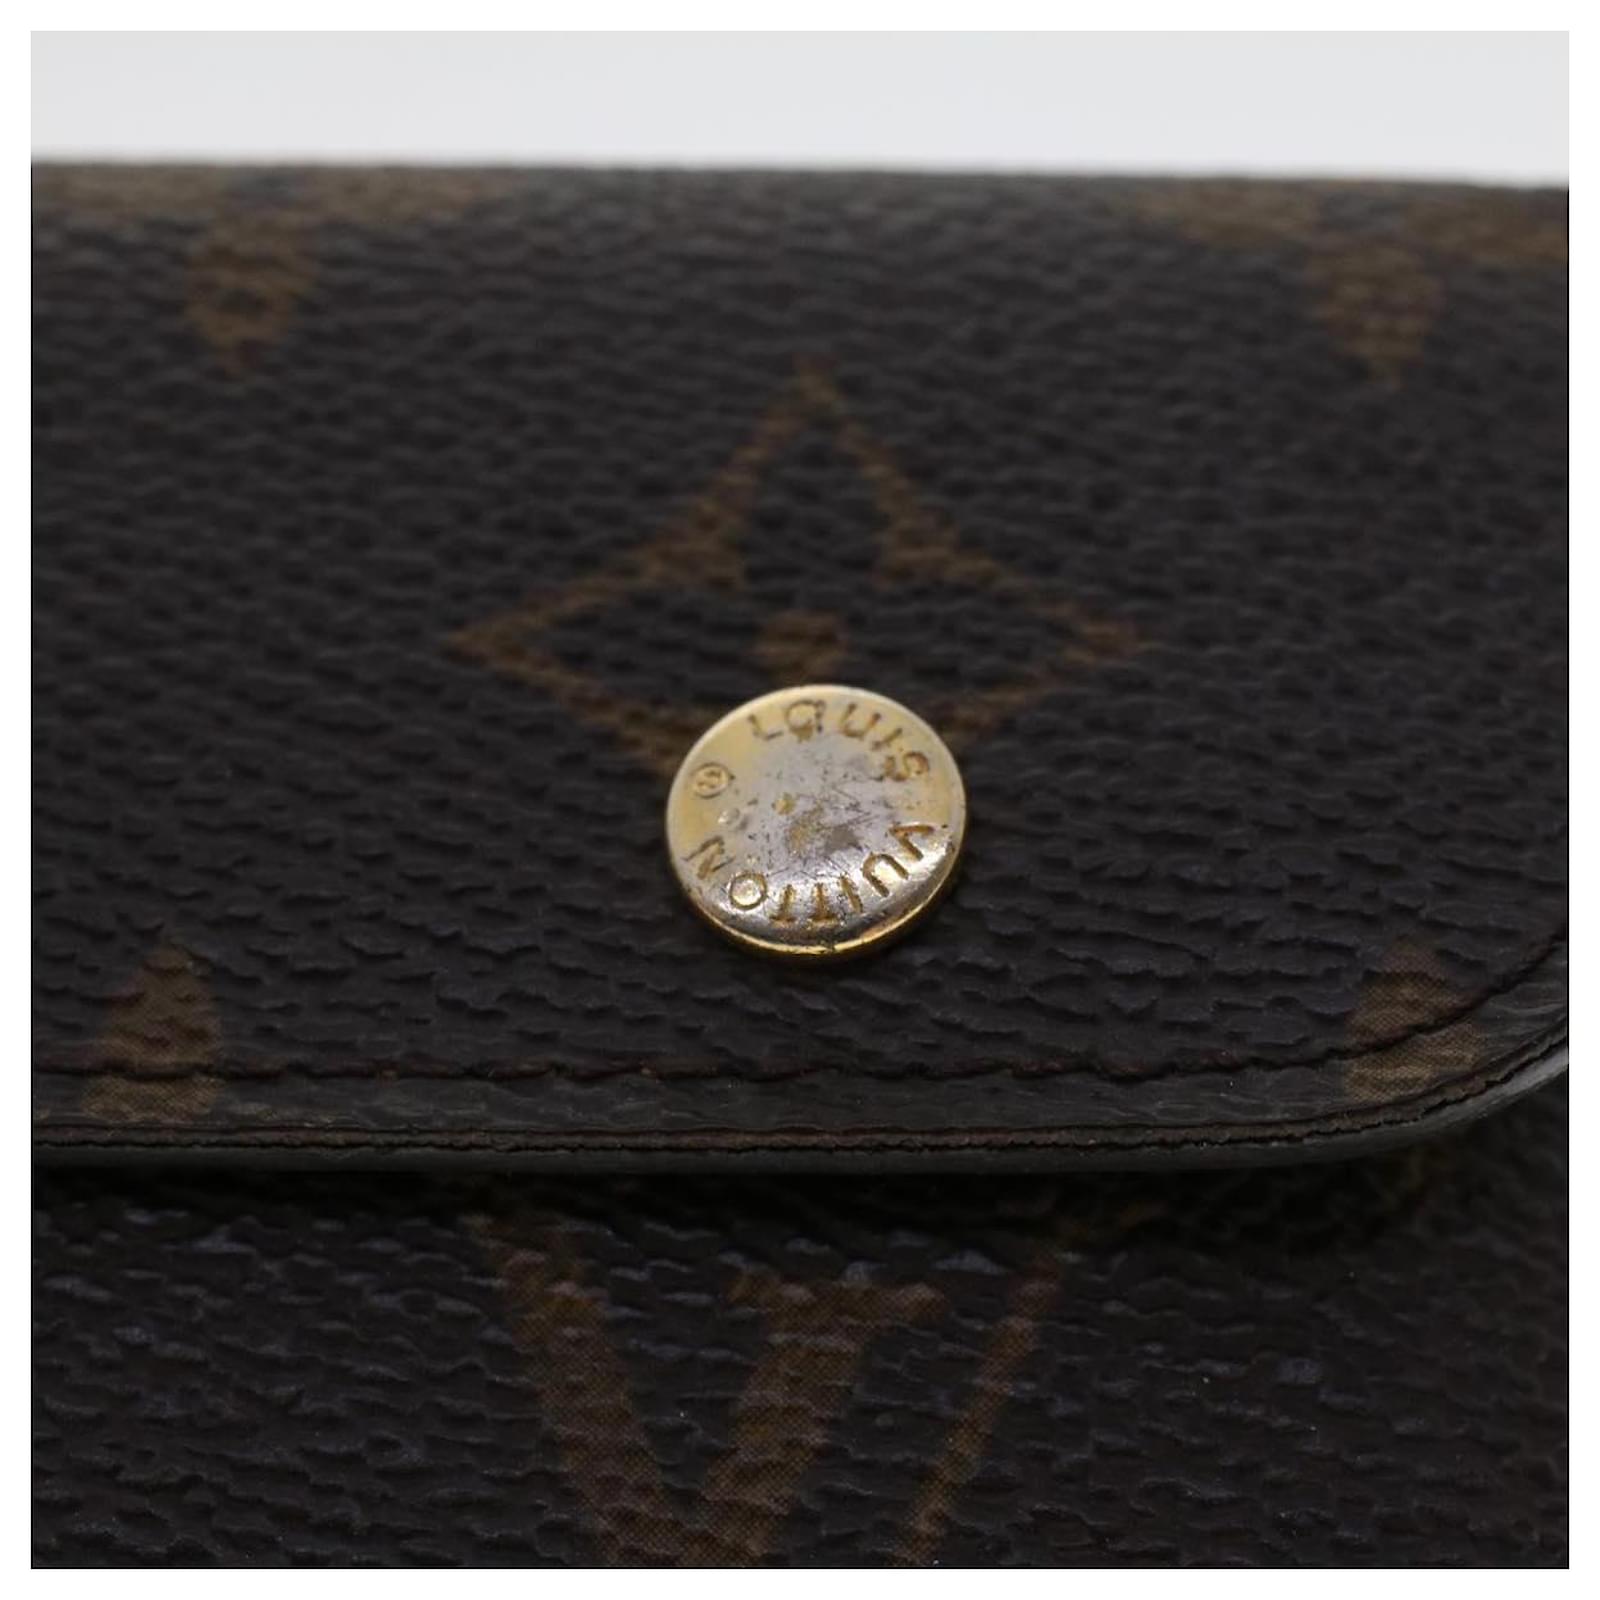 Louis Vuitton DAMIER GRAPHITE Neo card holder (N62666)